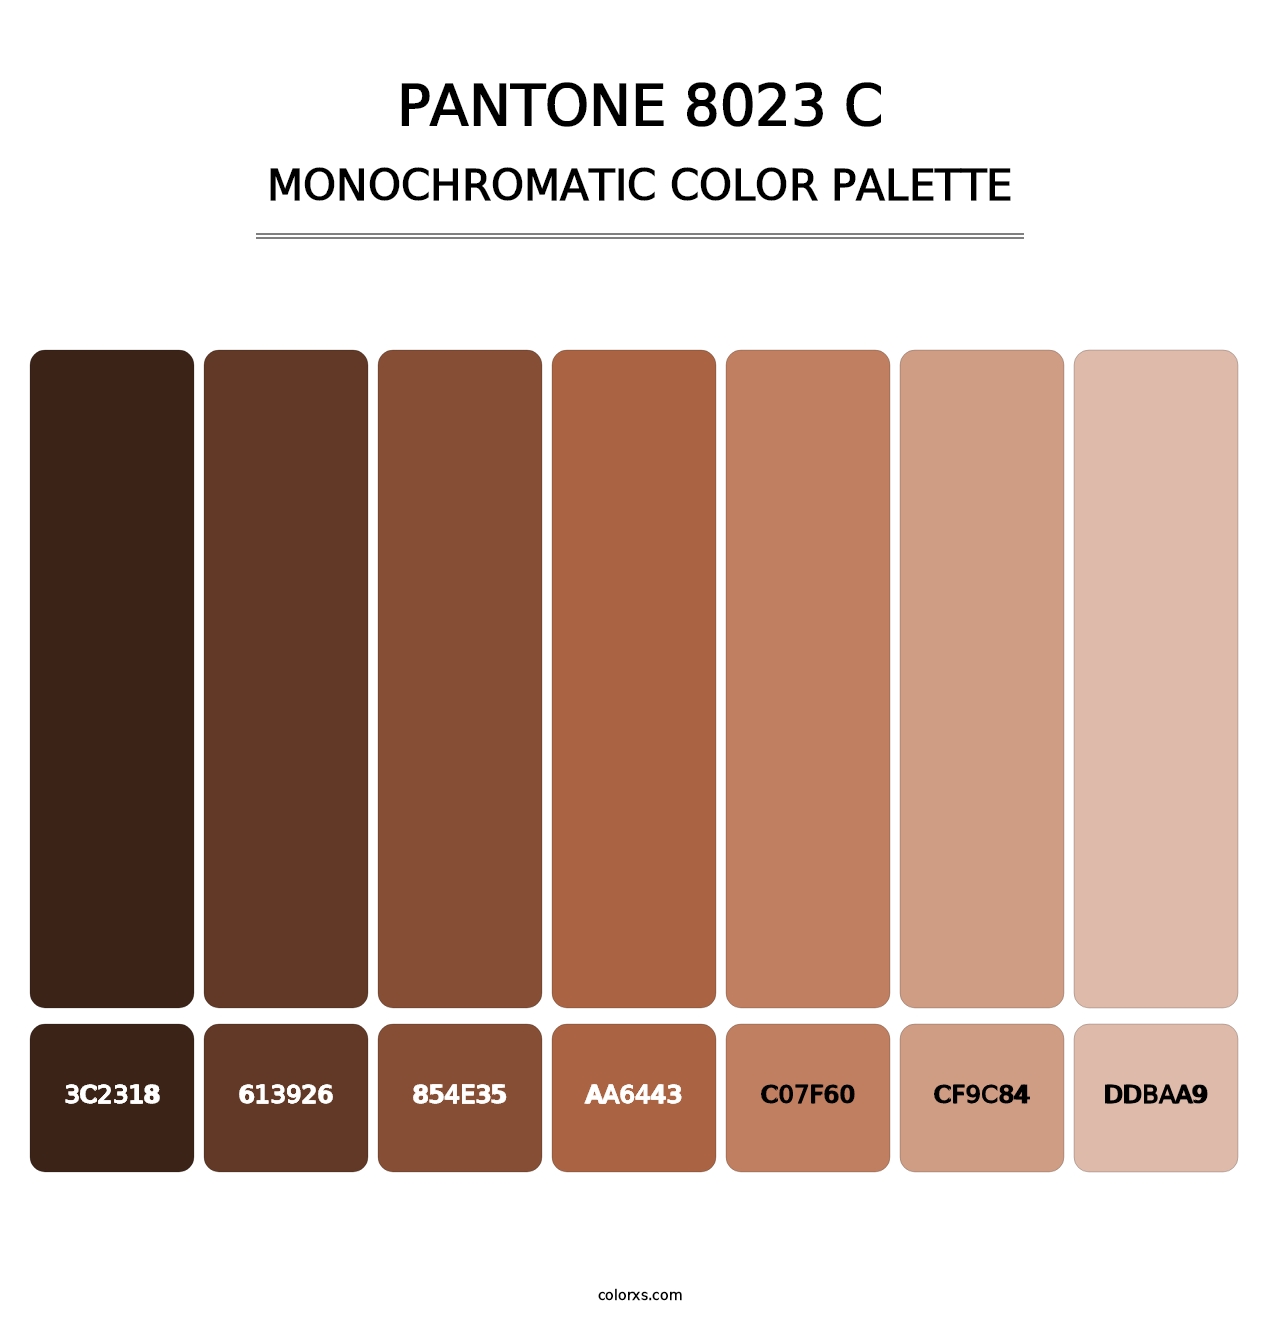 PANTONE 8023 C - Monochromatic Color Palette